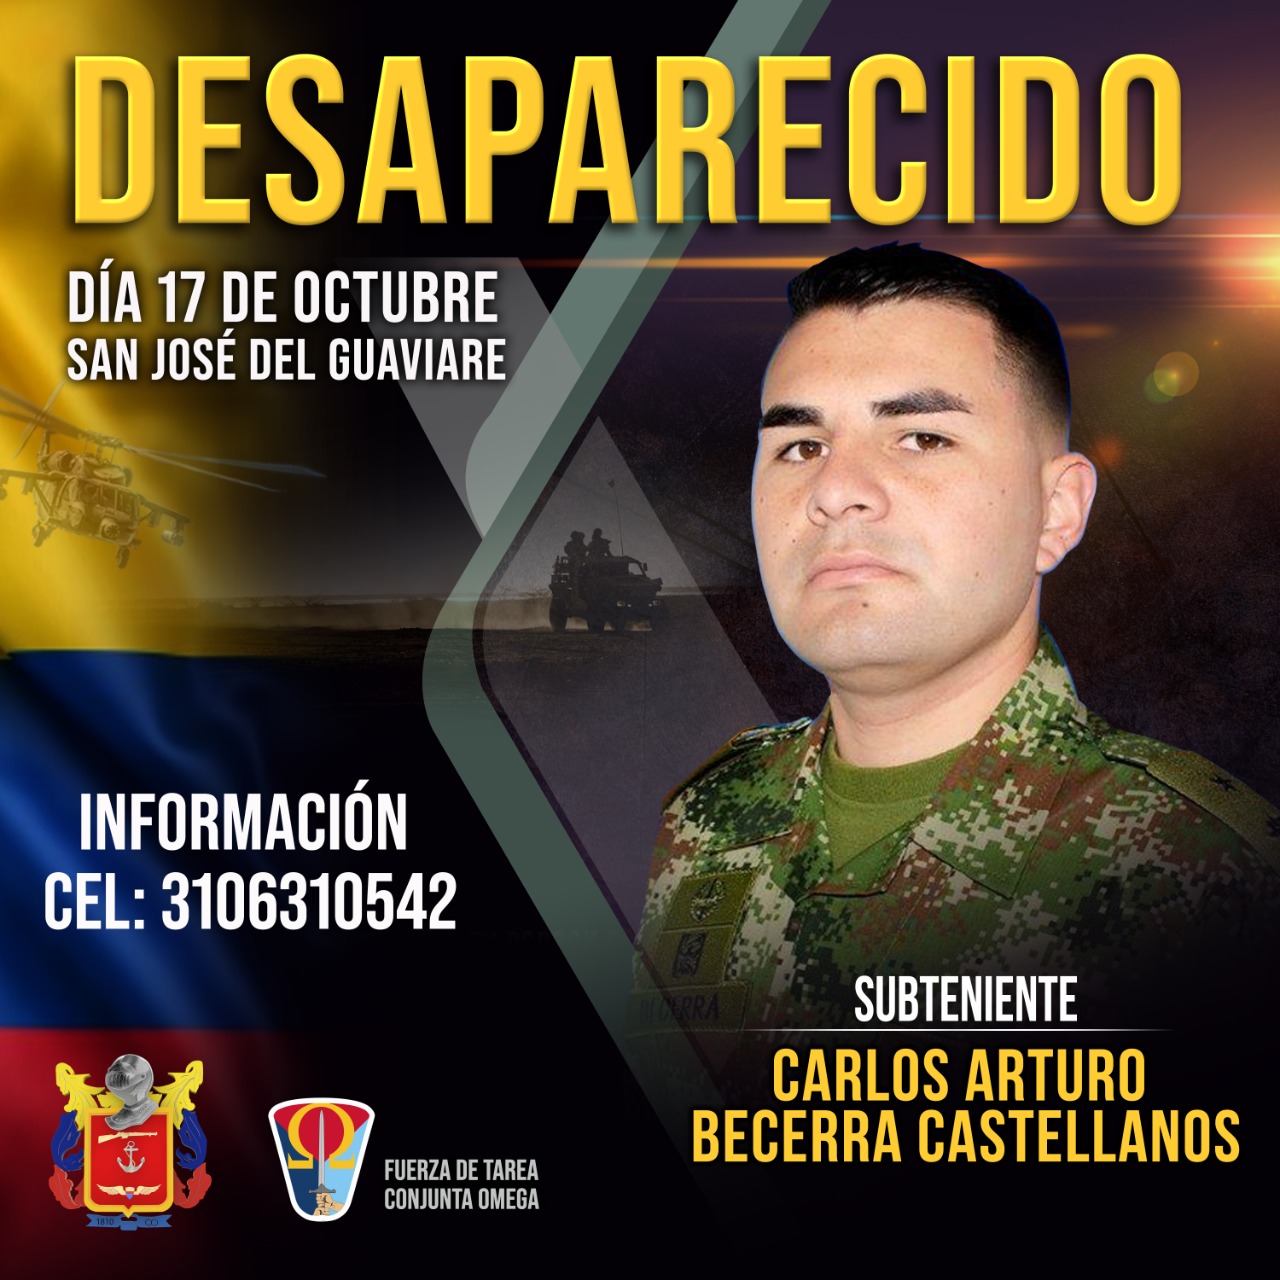 Subteniente del Ejército desaparecido en Guaviare 1